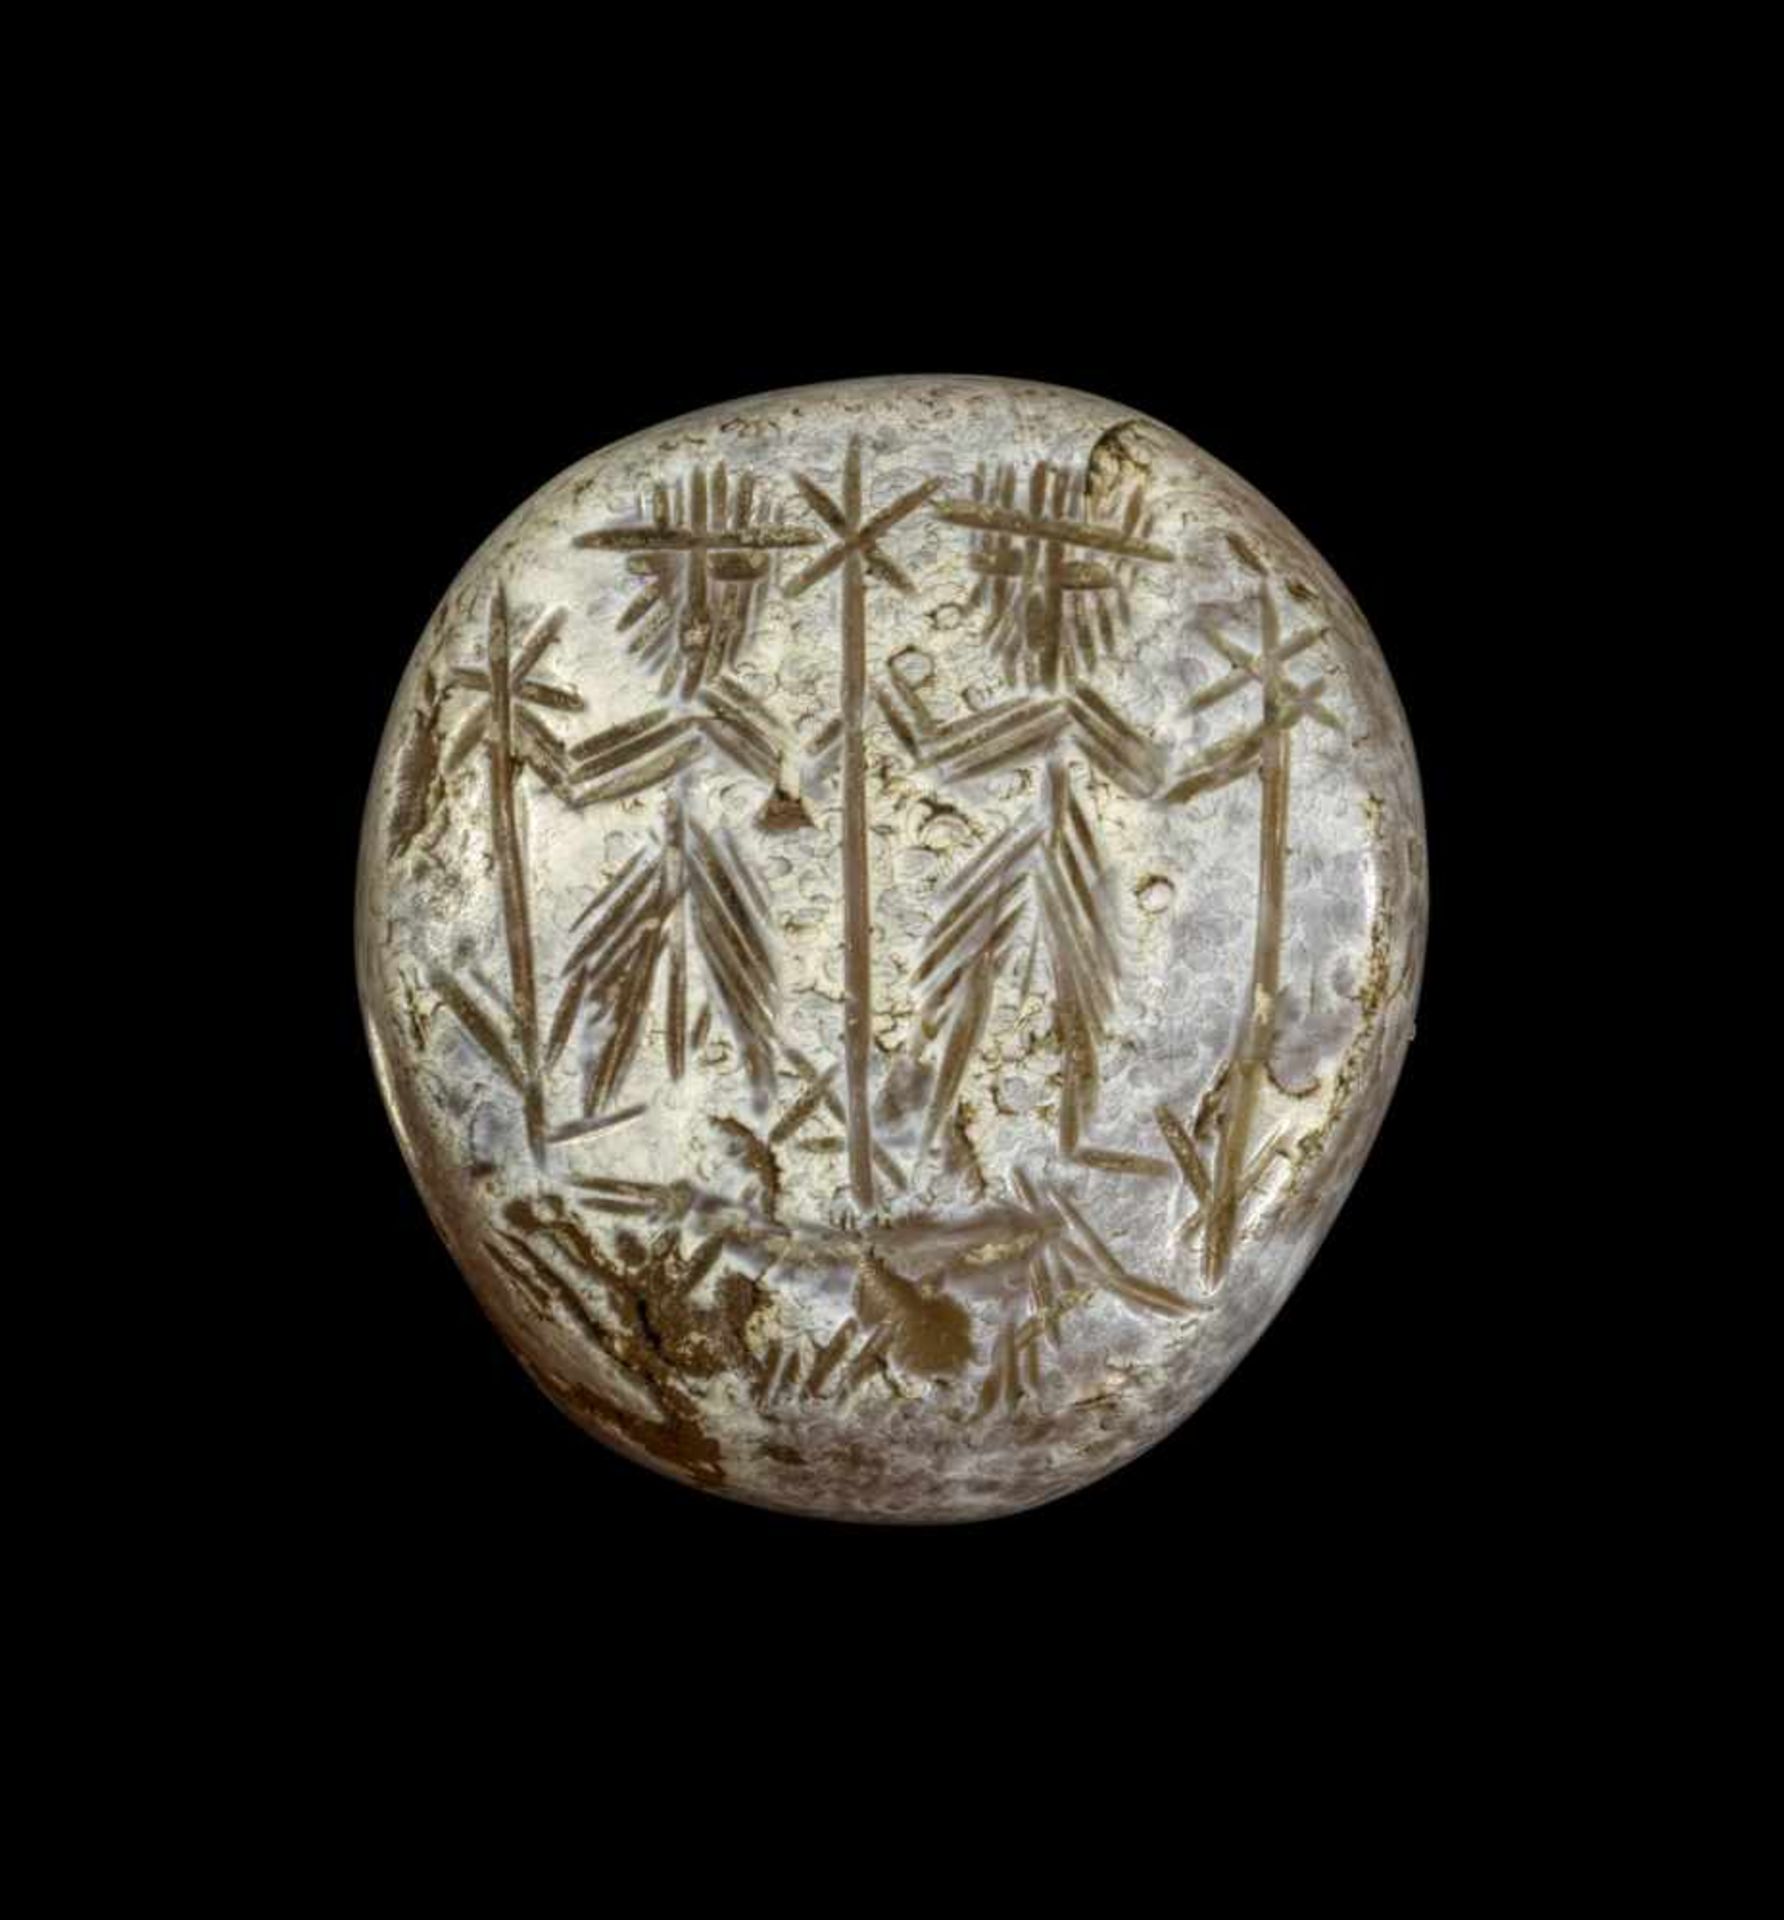 Stempelsiegel aus Achat. Sasanidisch, 5. Jh. n. Chr. H 3,5cm. Ovoid mit Querbohrung. Auf der